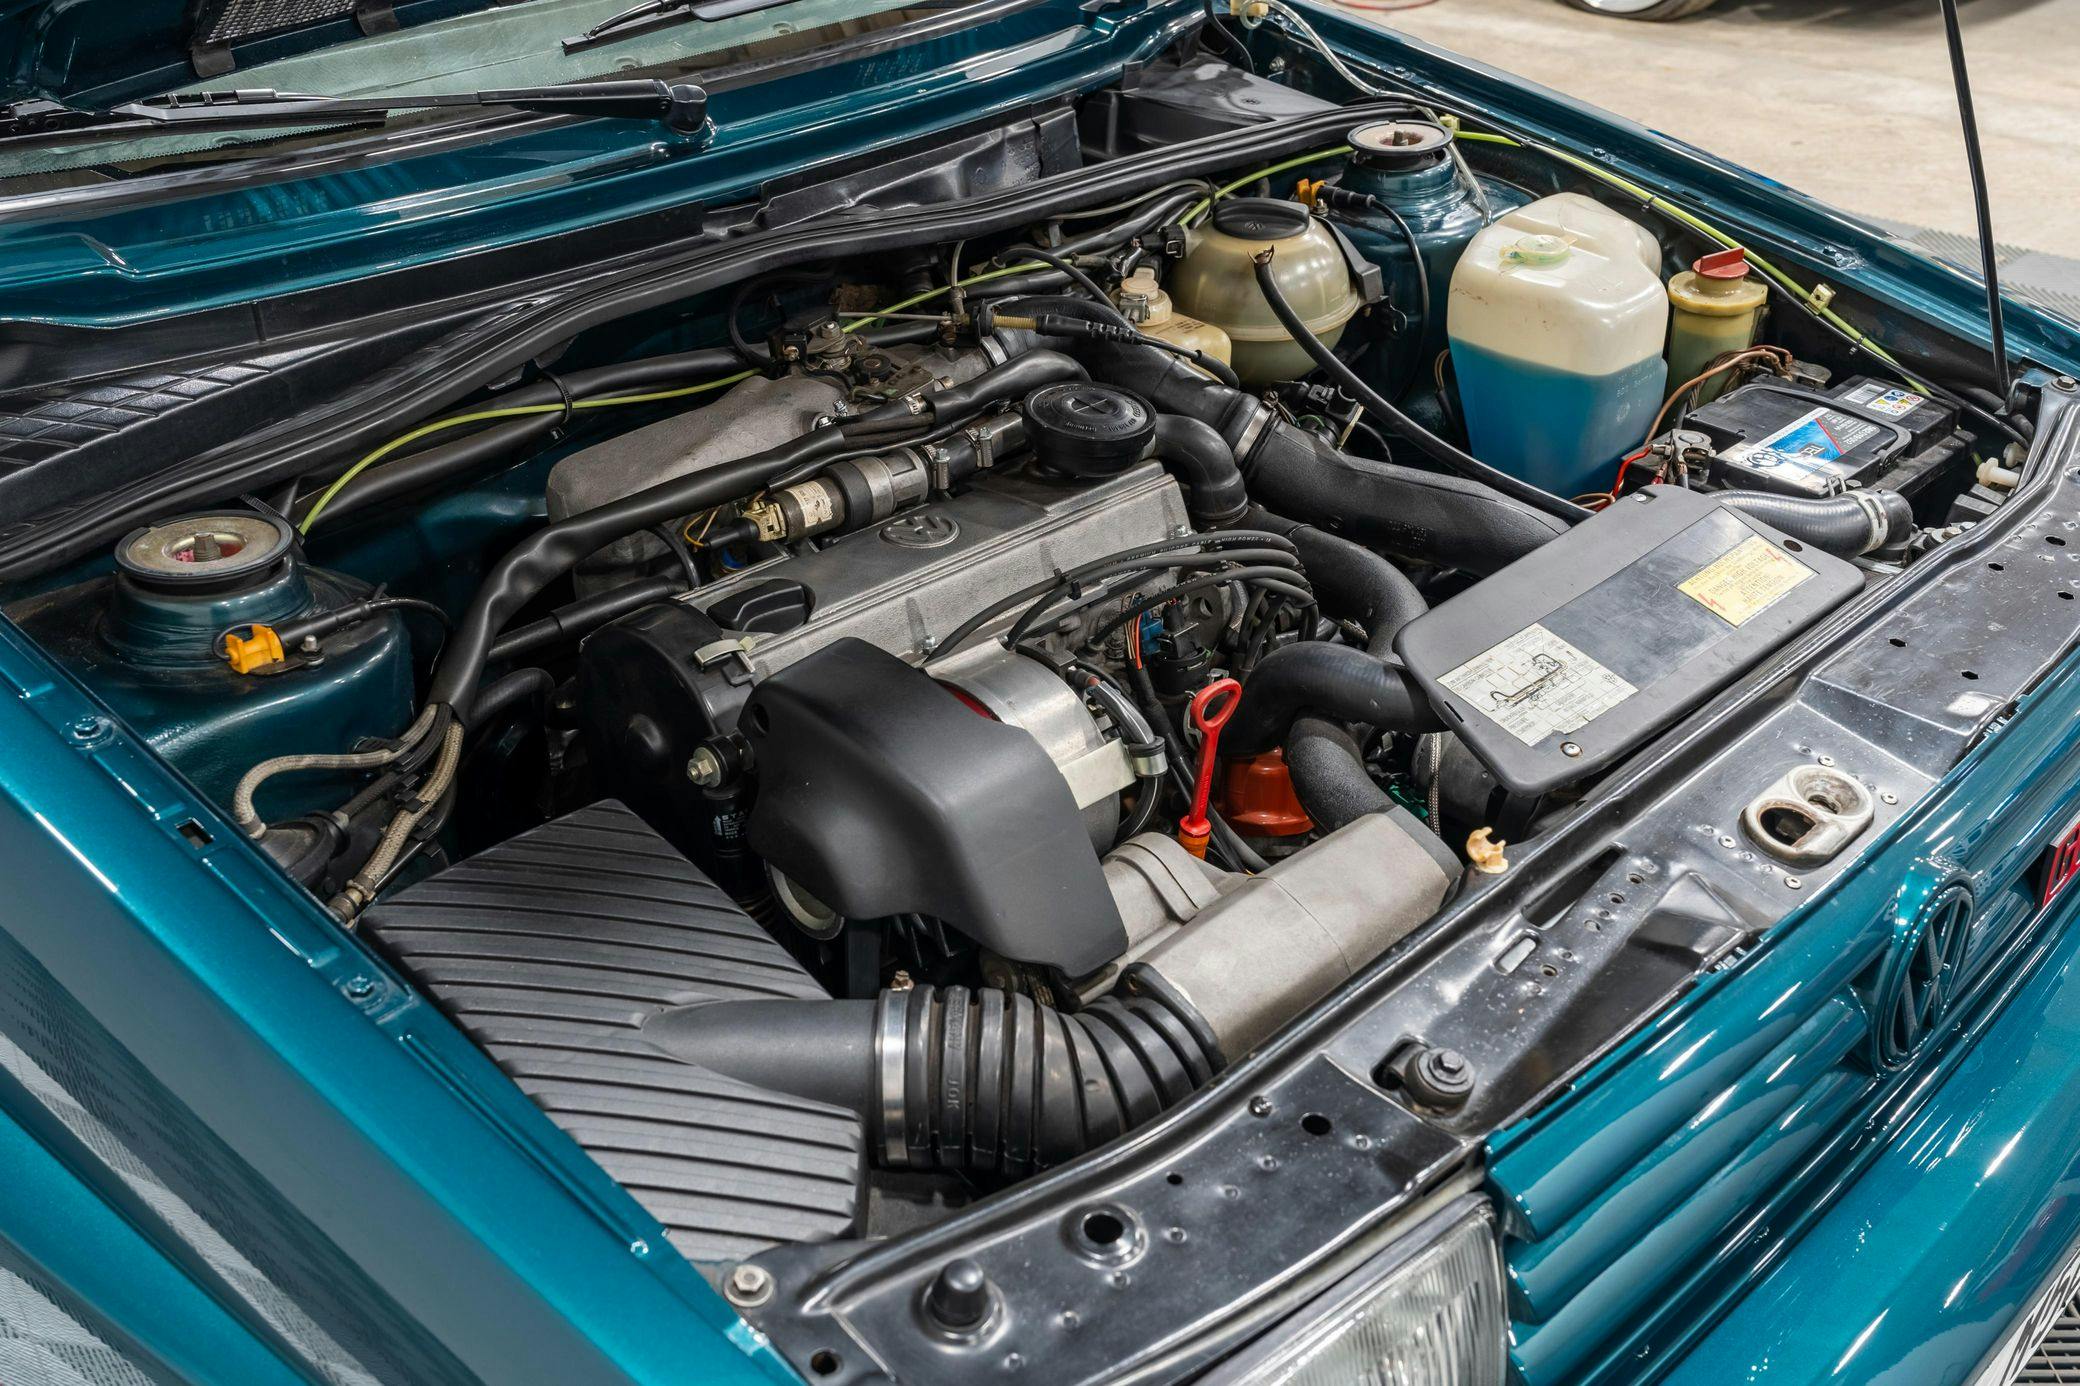 Volkswagen-G60-RallyeGolf engine bay